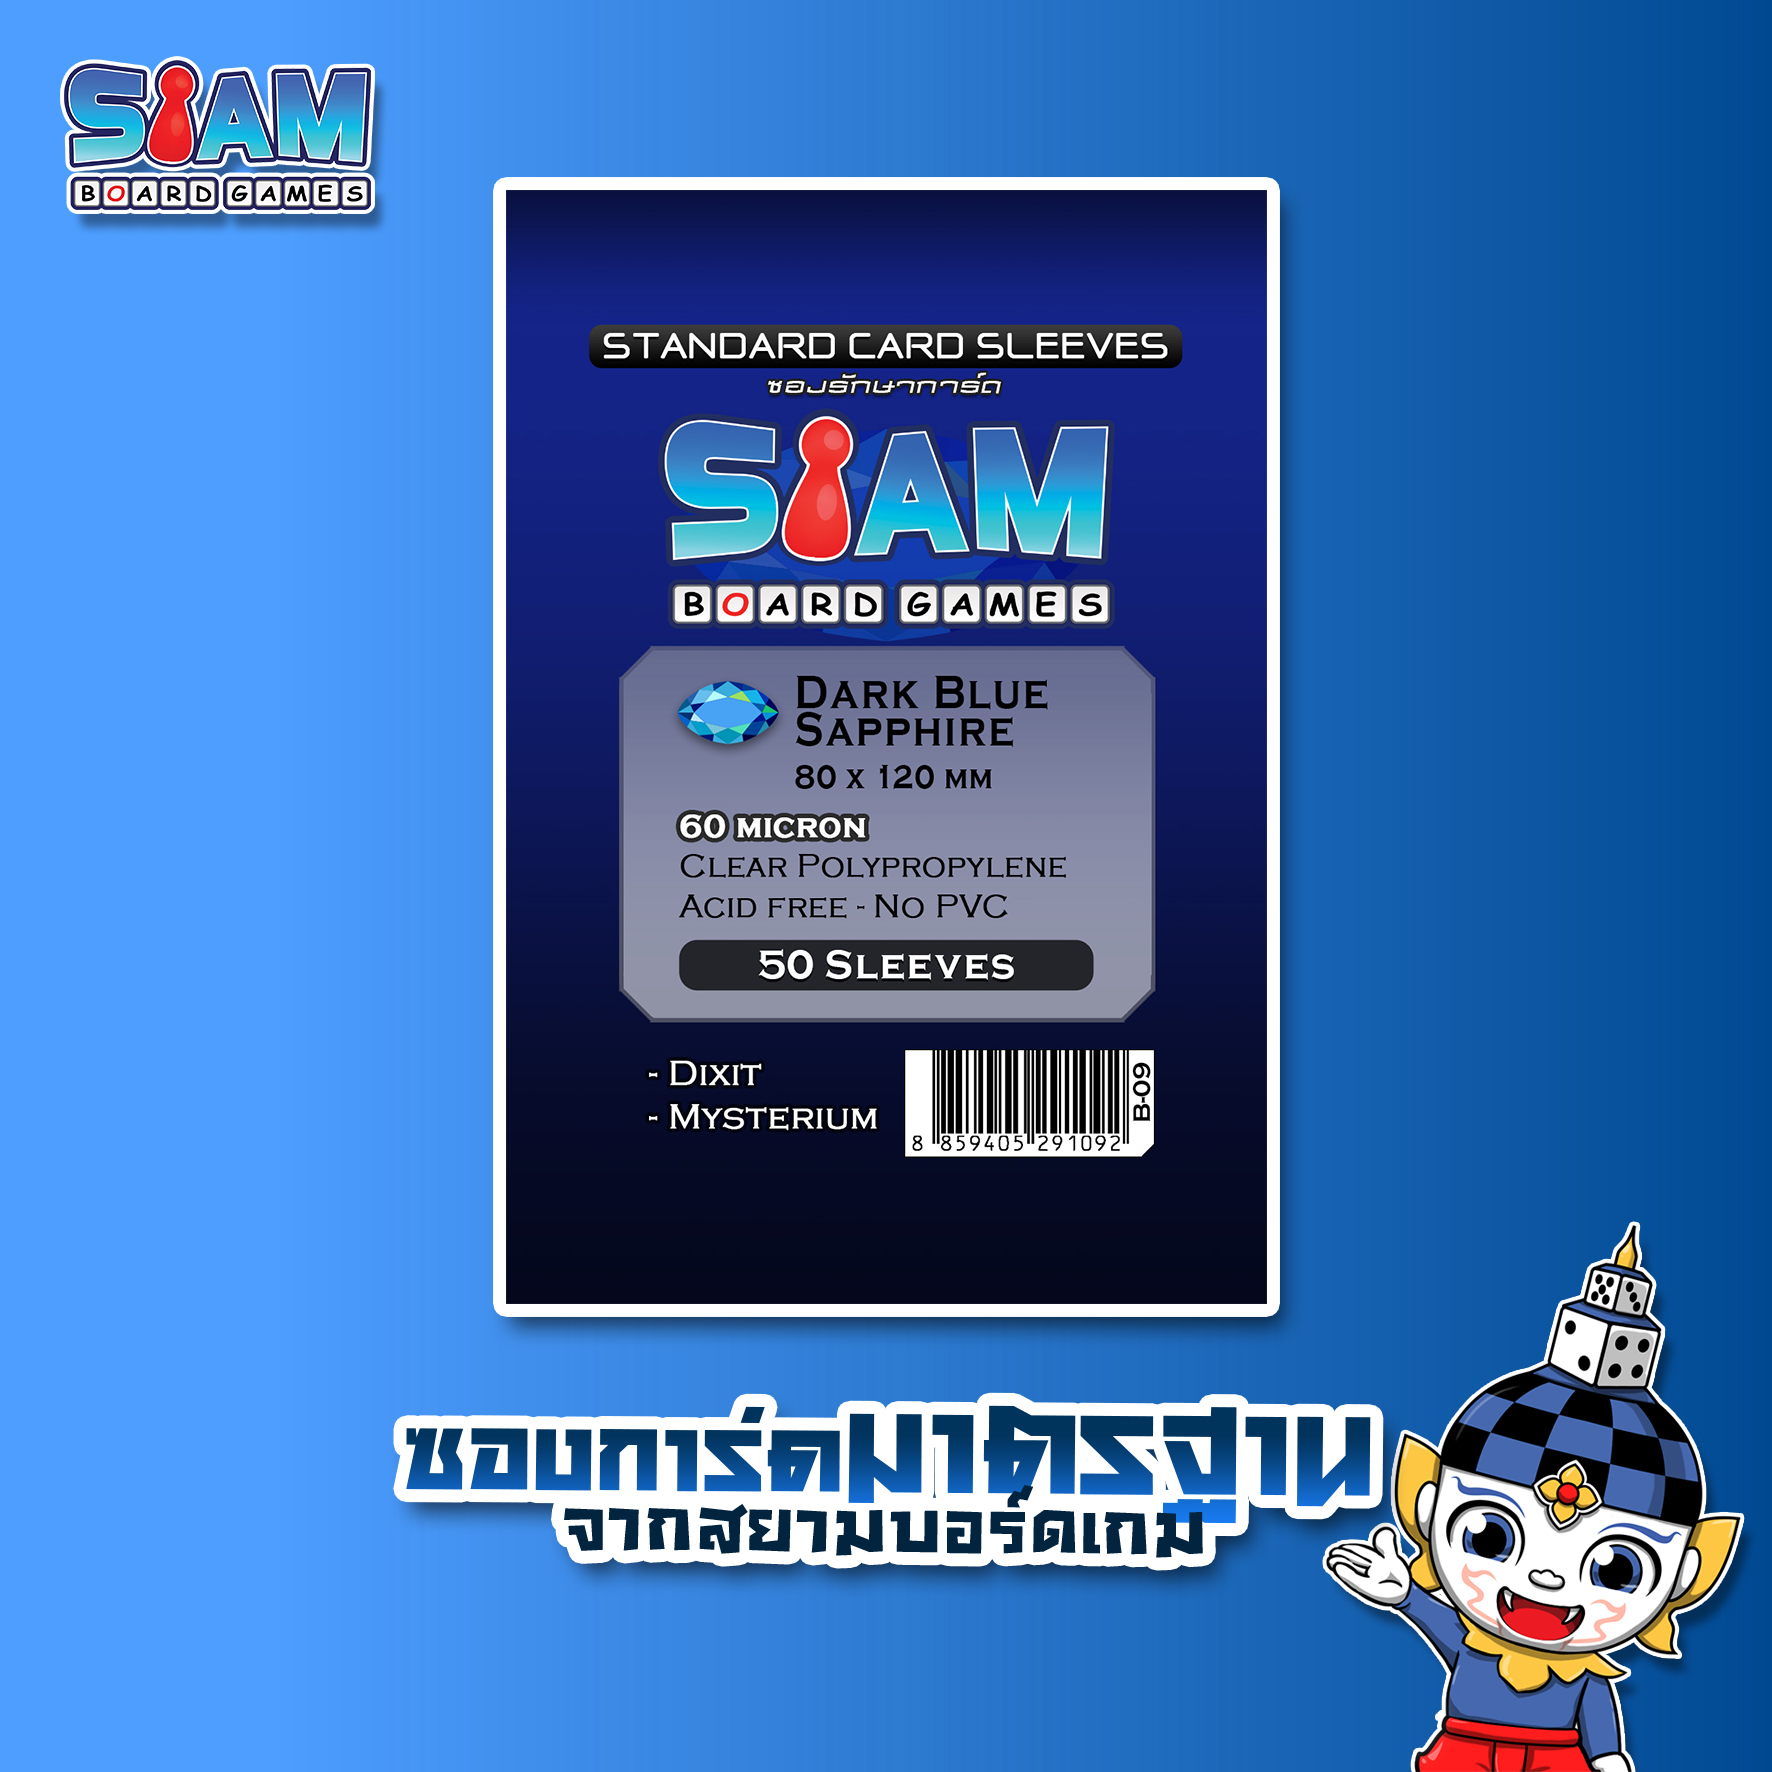 Siam Board Games : ซองใส่การ์ด 60 ไมครอน ขนาด 80 x 120 Dark Blue Sapphire ซองใส่การ์ด SBG Sleeve